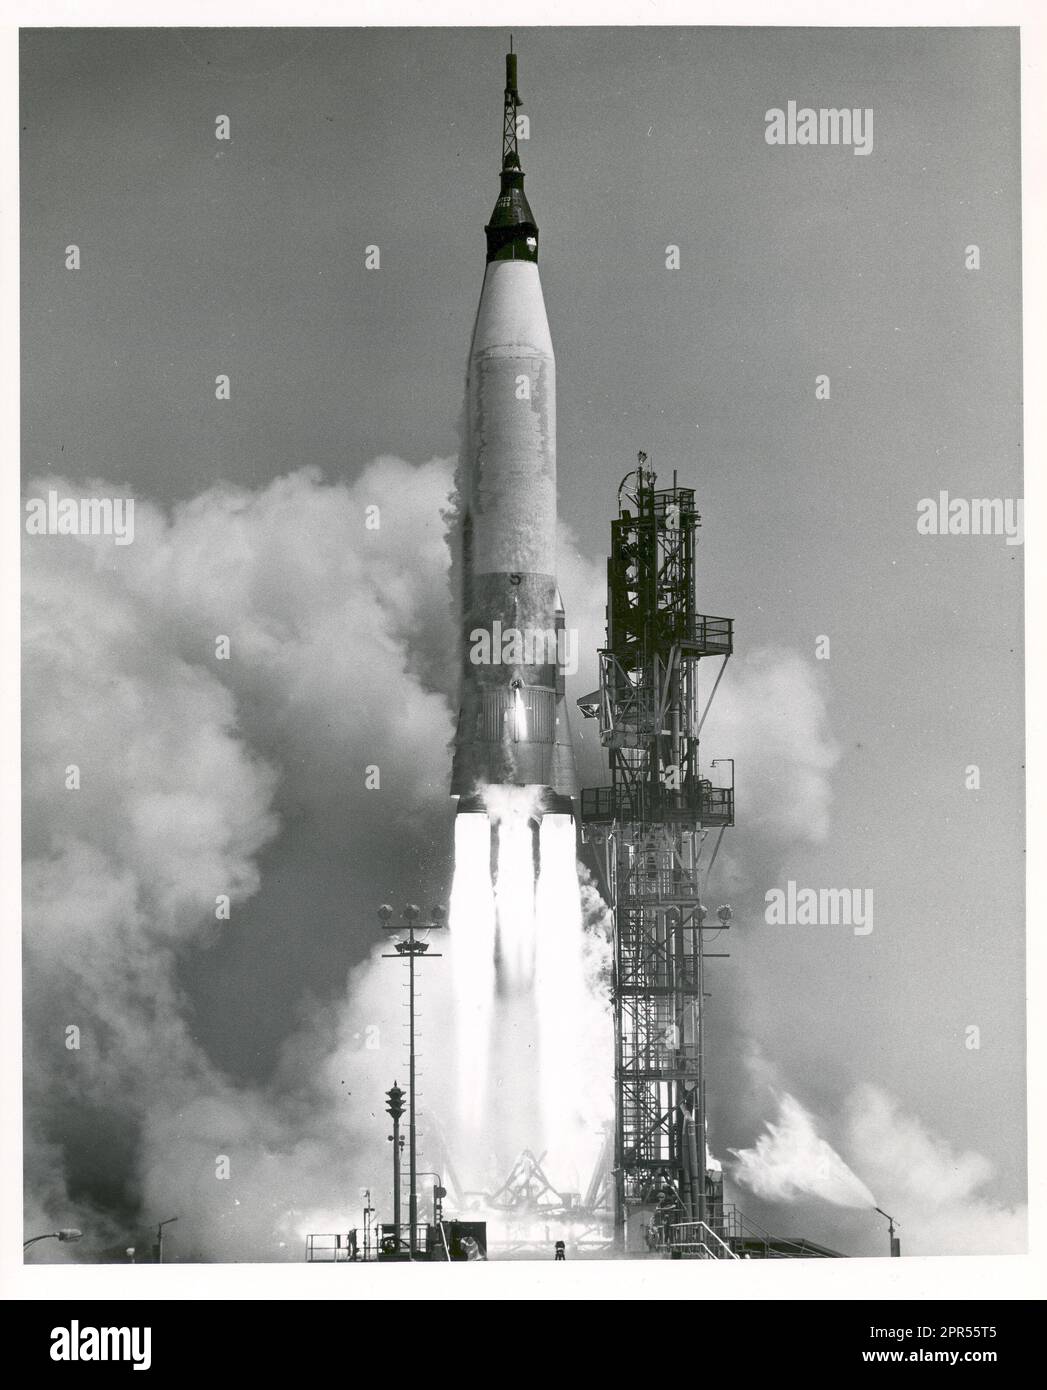 Am 25. April 1961 wurde um 11:15 UHR EST von Cape Canaveral, Florida, ein NASA Project Mercury Raumschiff in einem Test gestartet, der die Mercury-Raumsonde und alle Systeme qualifizieren soll, die während des Orbits und der Wiedereinführung aus dem Orbit funktionieren müssen. Das Mercury-Atlas-Fahrzeug wurde etwa 40 Sekunden nach dem Abfahren vom Range Safety Officer zerstört. Das Raumschiff wurde geborgen und schien in gutem Zustand zu sein. Atlas wurde entwickelt, um Nutzlasten in niedrige Erdumlaufbahn, geosynchrone Transferumlaufbahn oder geosynchrone Umlaufbahn zu starten. Die NASA startete Atlas erstmals 1958 als Weltraumstartfahrzeug. PROJEKTWERTUNG, die Stockfoto